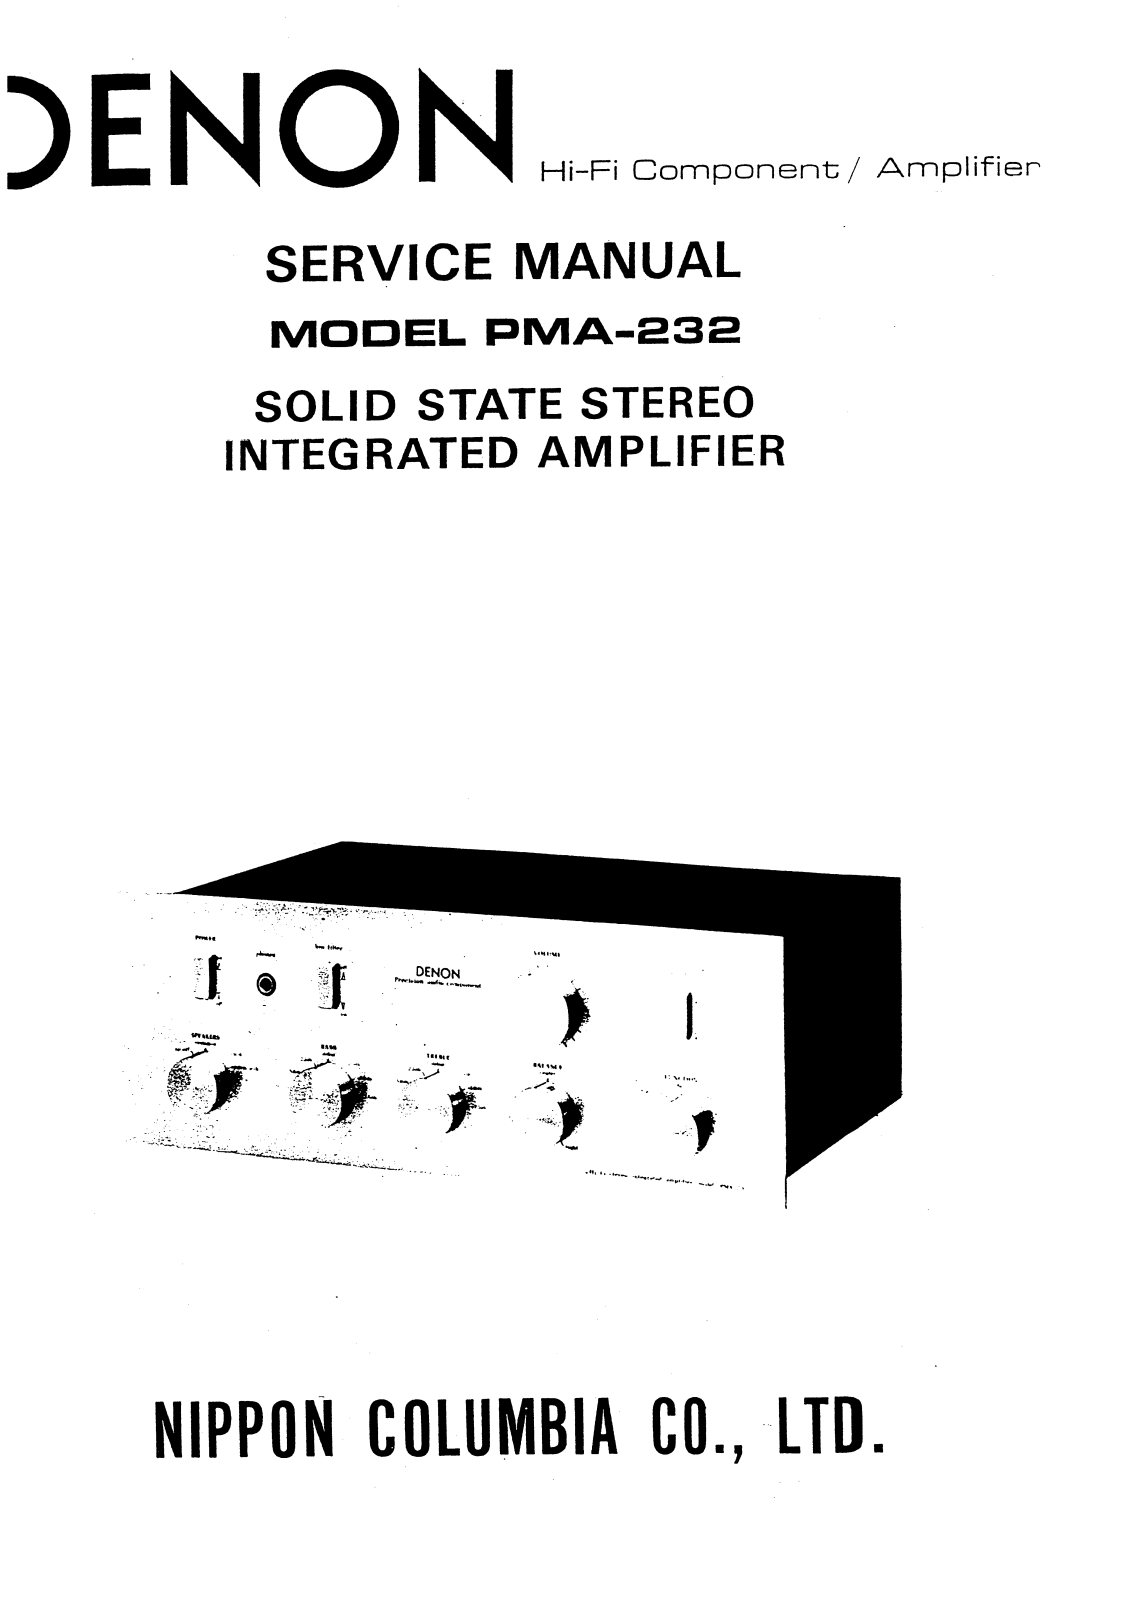 Denon PMA-232 Service Manual